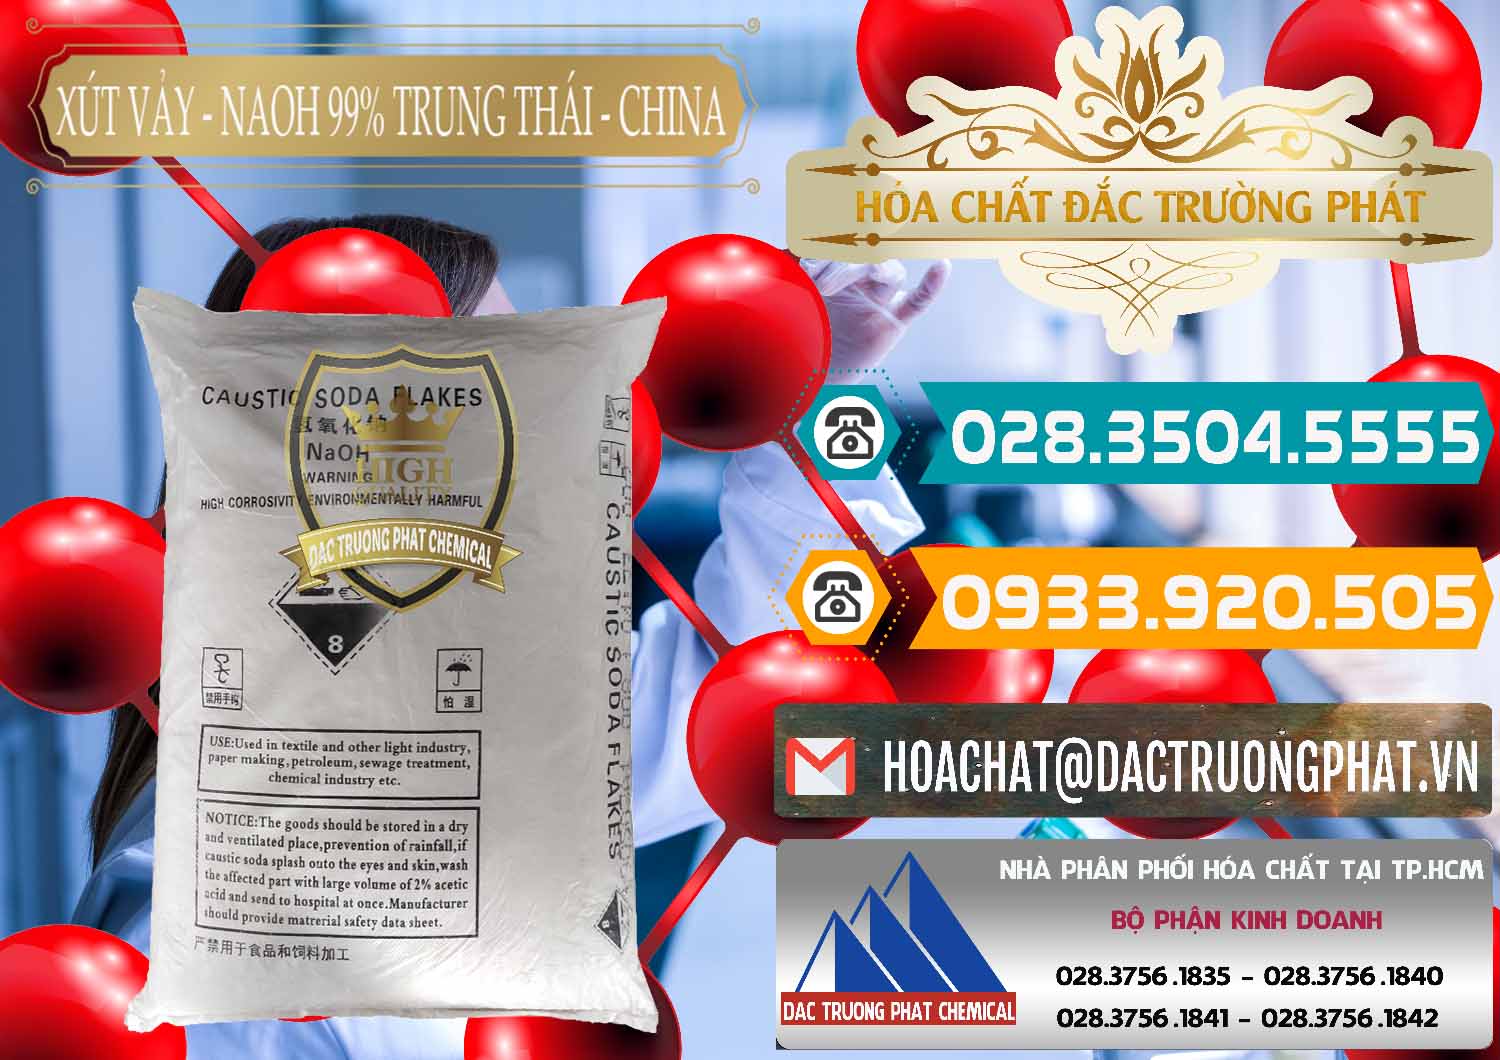 Đơn vị chuyên phân phối và bán Xút Vảy - NaOH Vảy 99% Trung Thái China Trung Quốc - 0176 - Cty chuyên bán - cung cấp hóa chất tại TP.HCM - congtyhoachat.vn